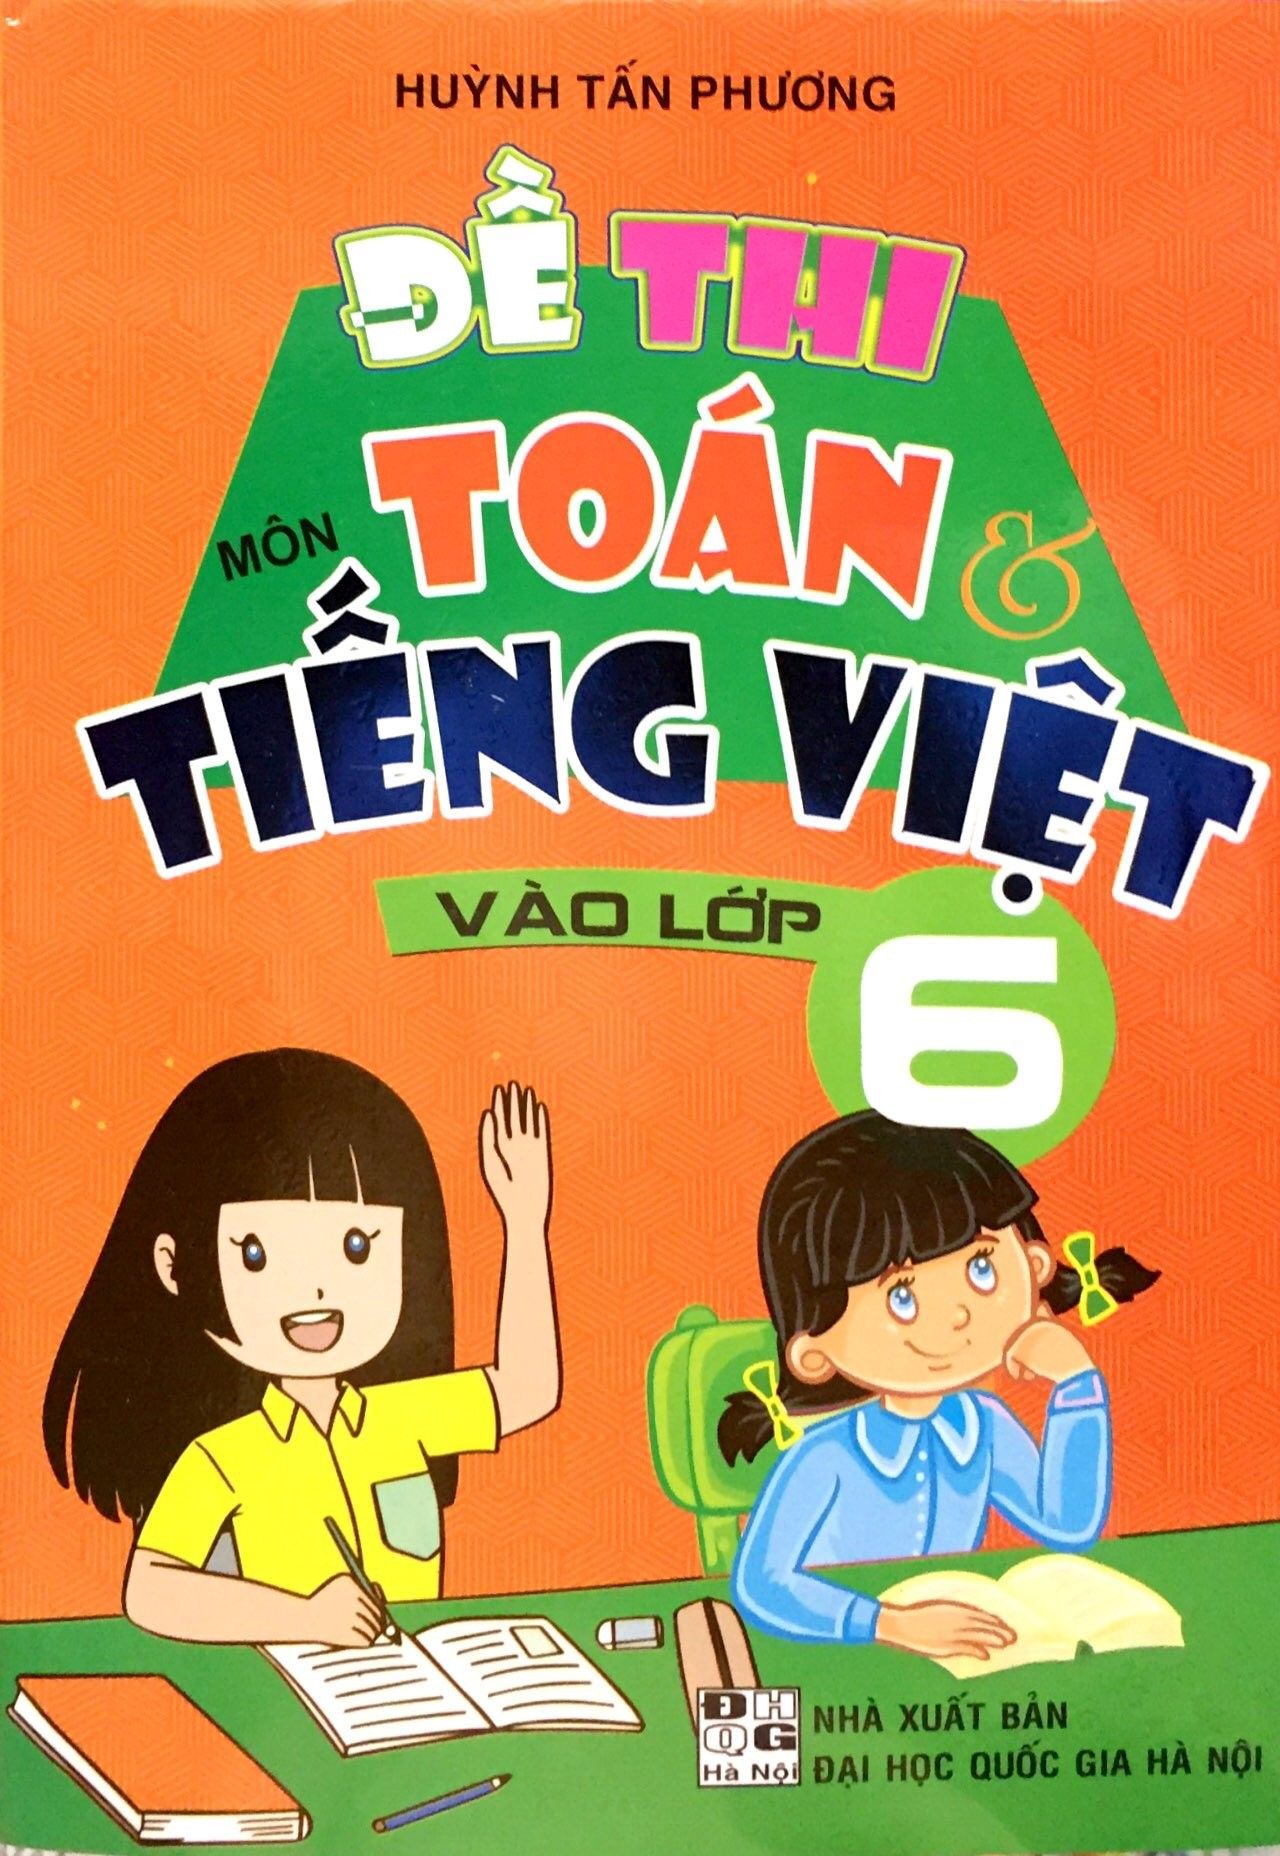  Đề Thi Môn Toán & Tiếng Việt Vào Lớp 6 